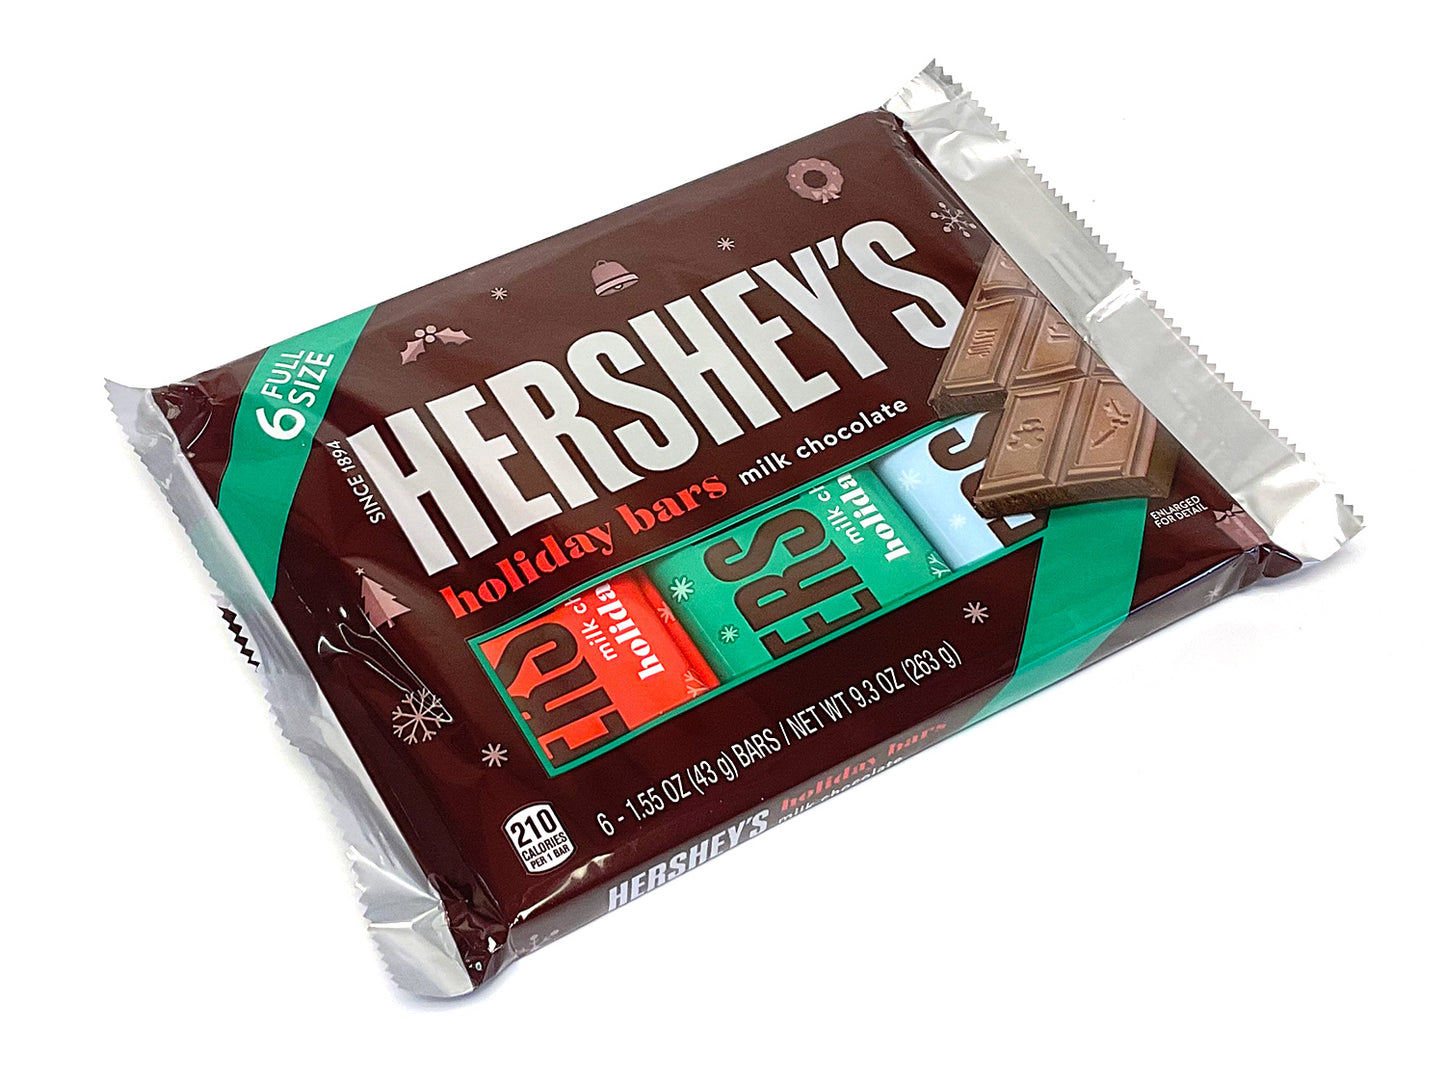 Hershey's Milk Chocolate Christmas 6 pack - 9.3 oz